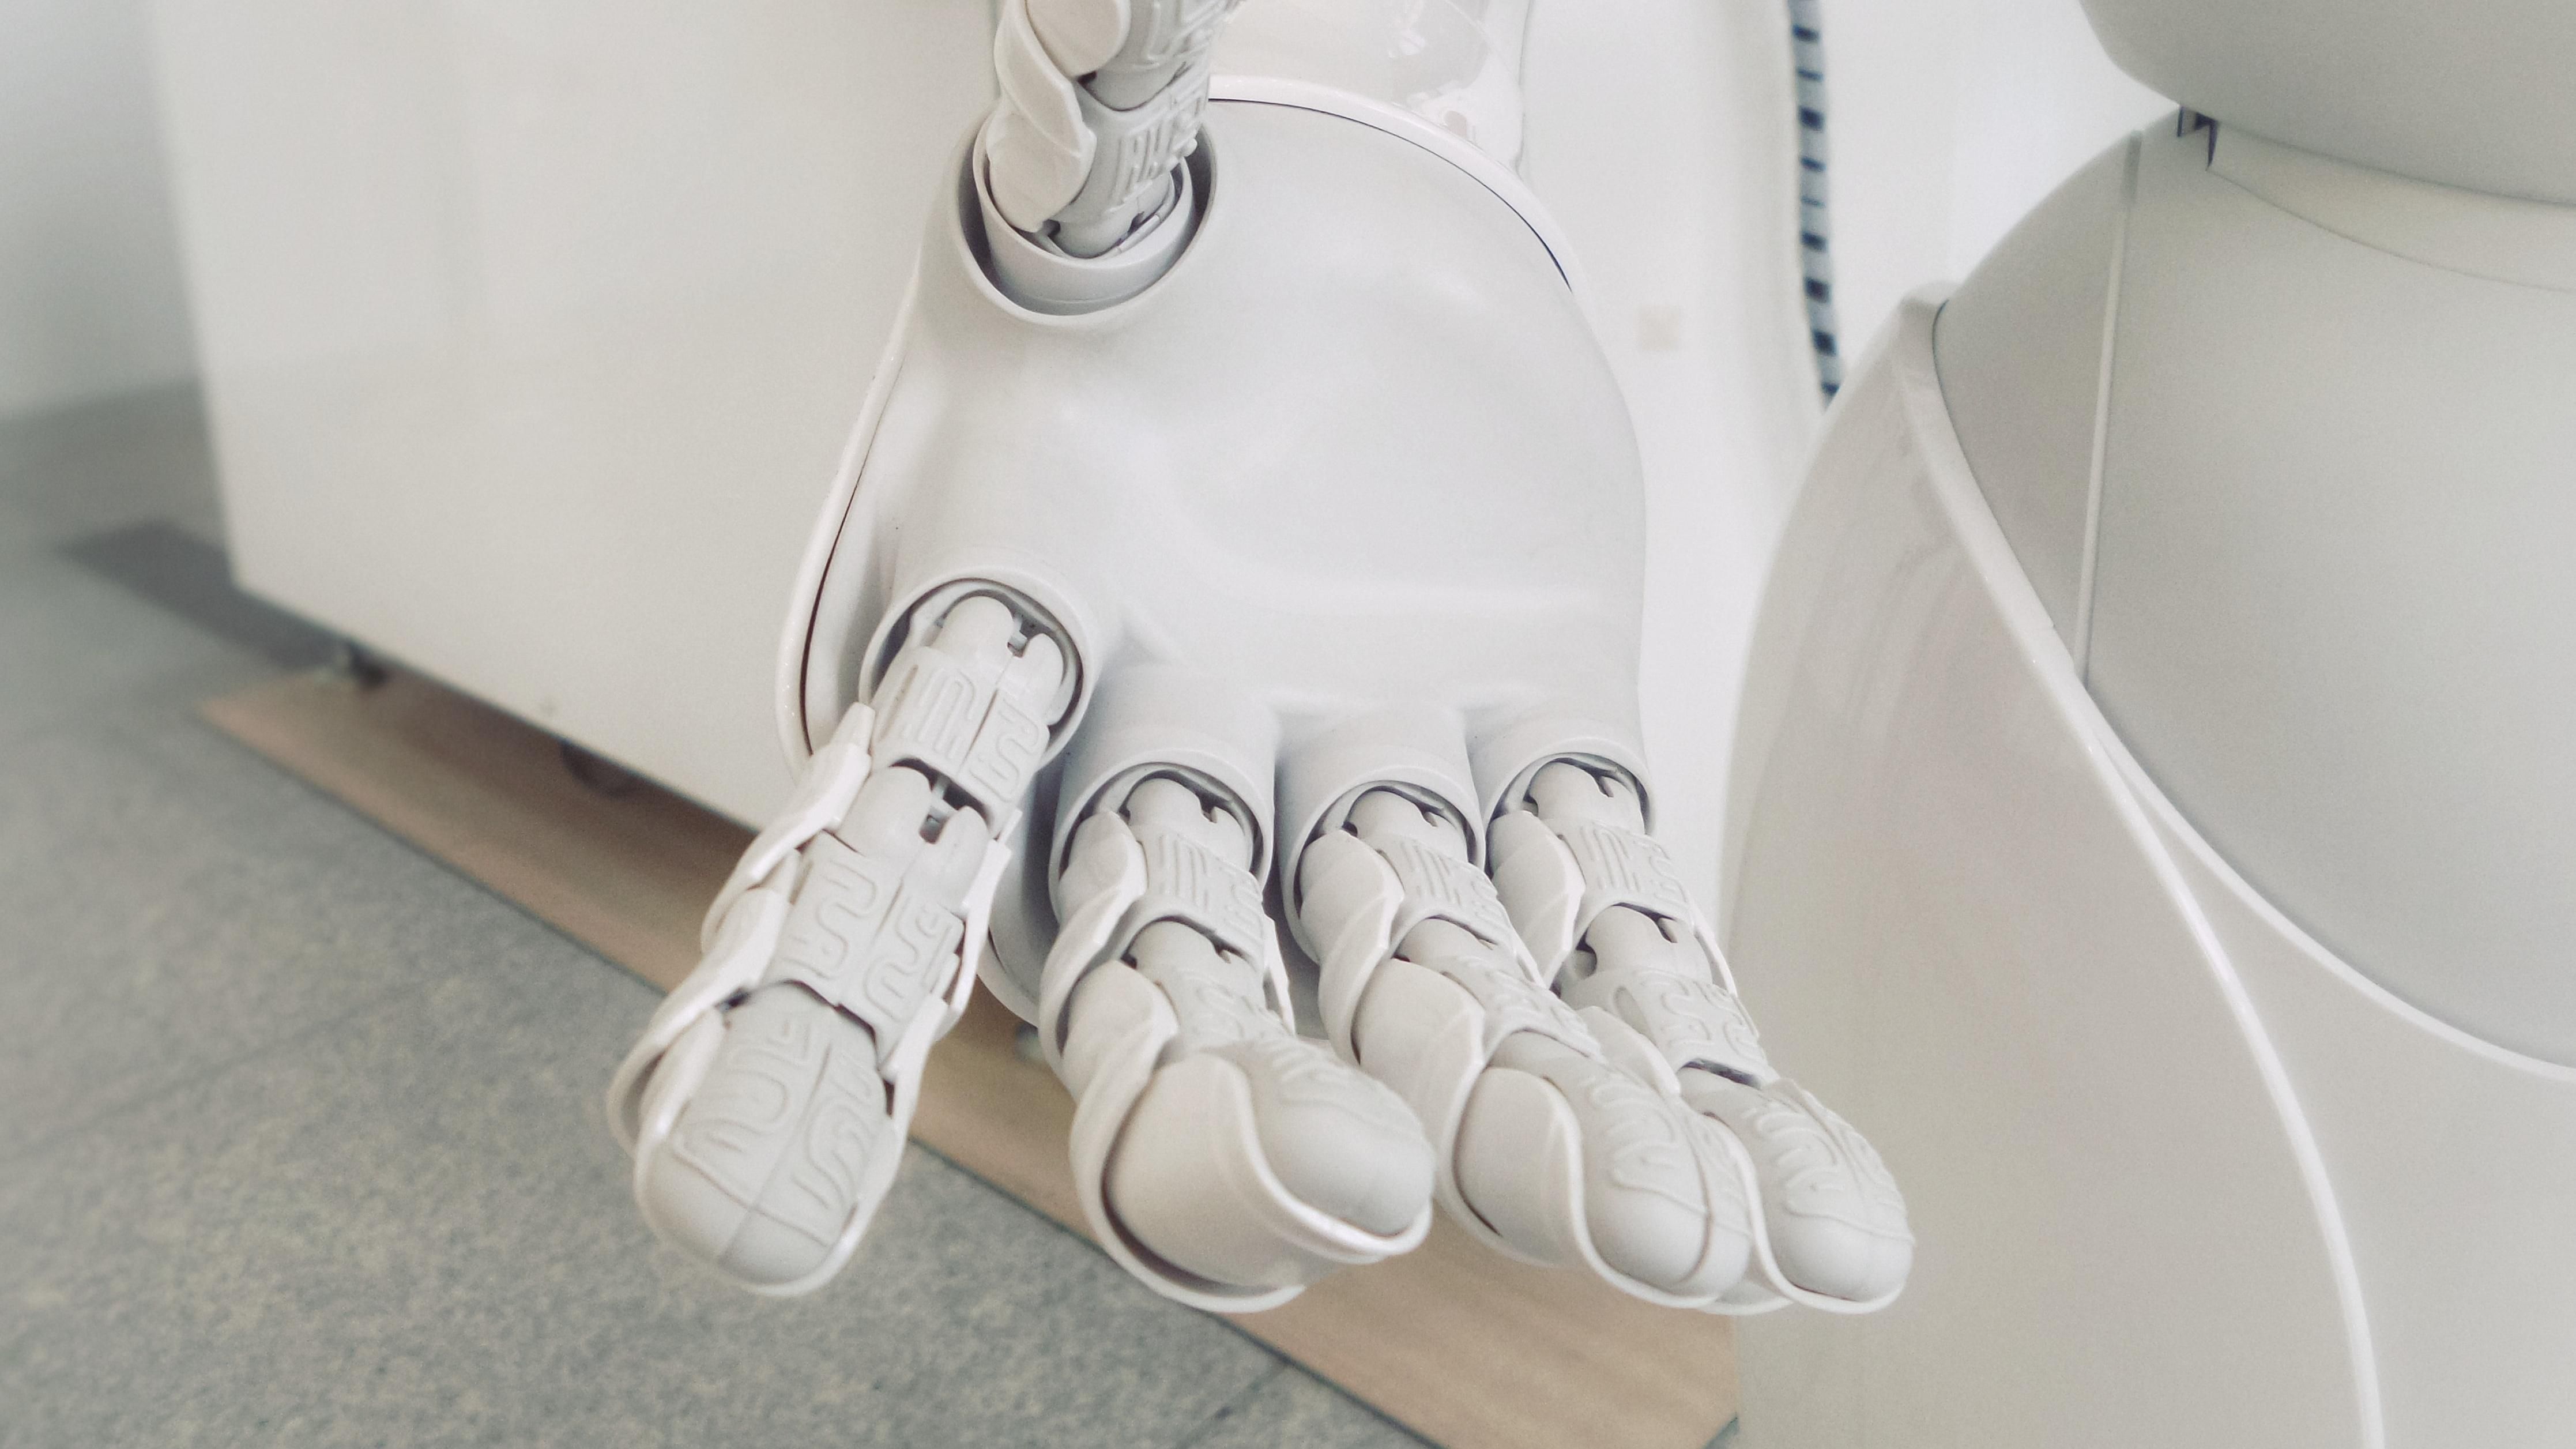 У Boston Dynamics готують незвичних "роботів-помічників"